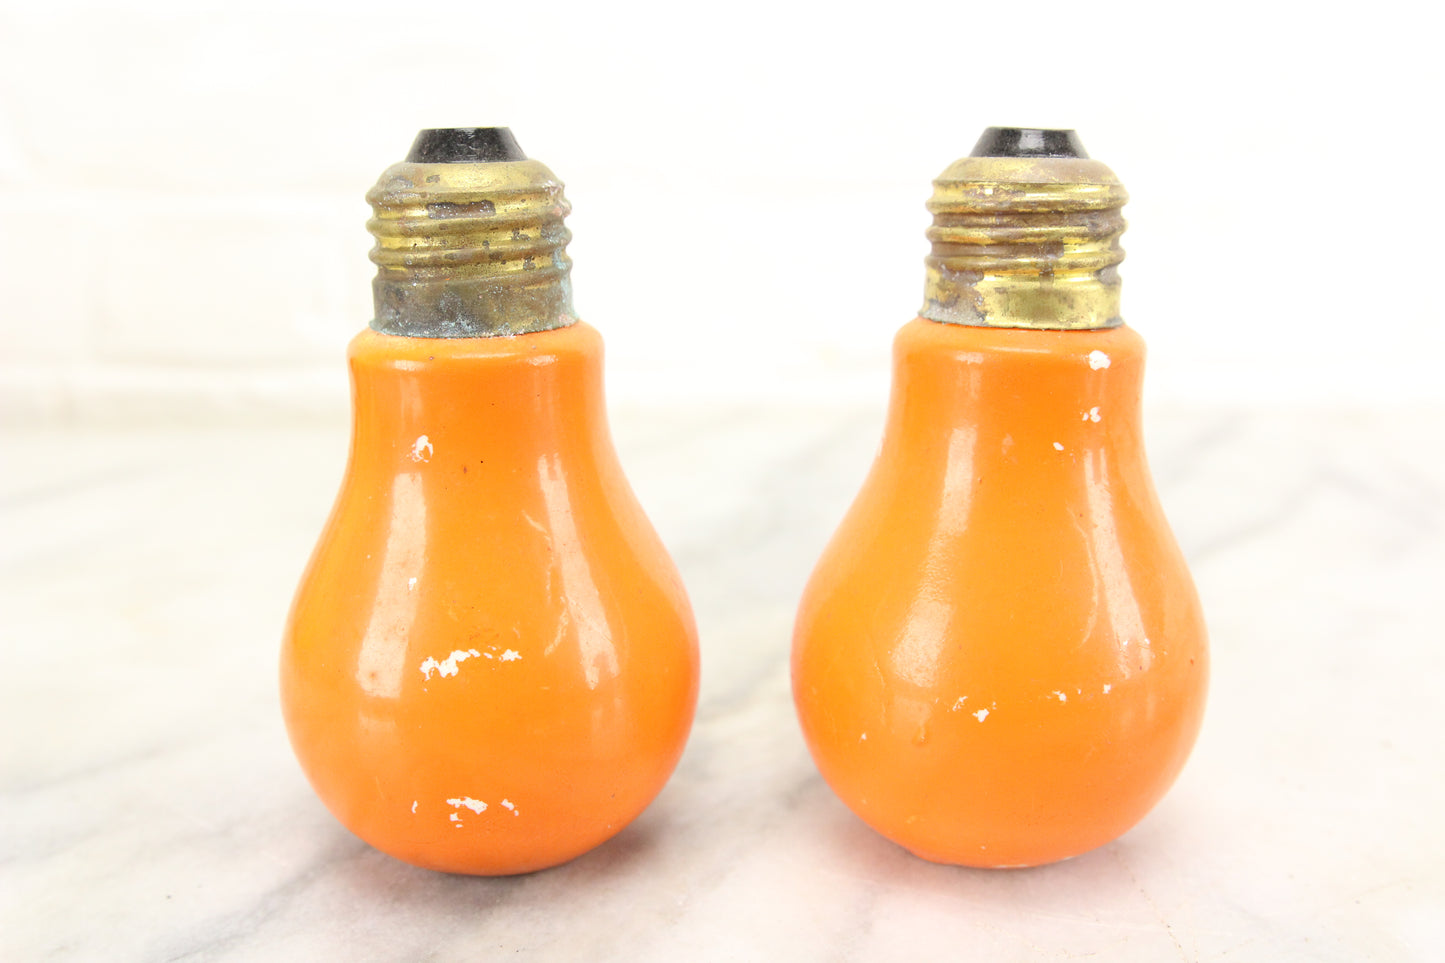 Orange Lightbulb Porcelain Salt and Pepper Shakers, Made in Japan